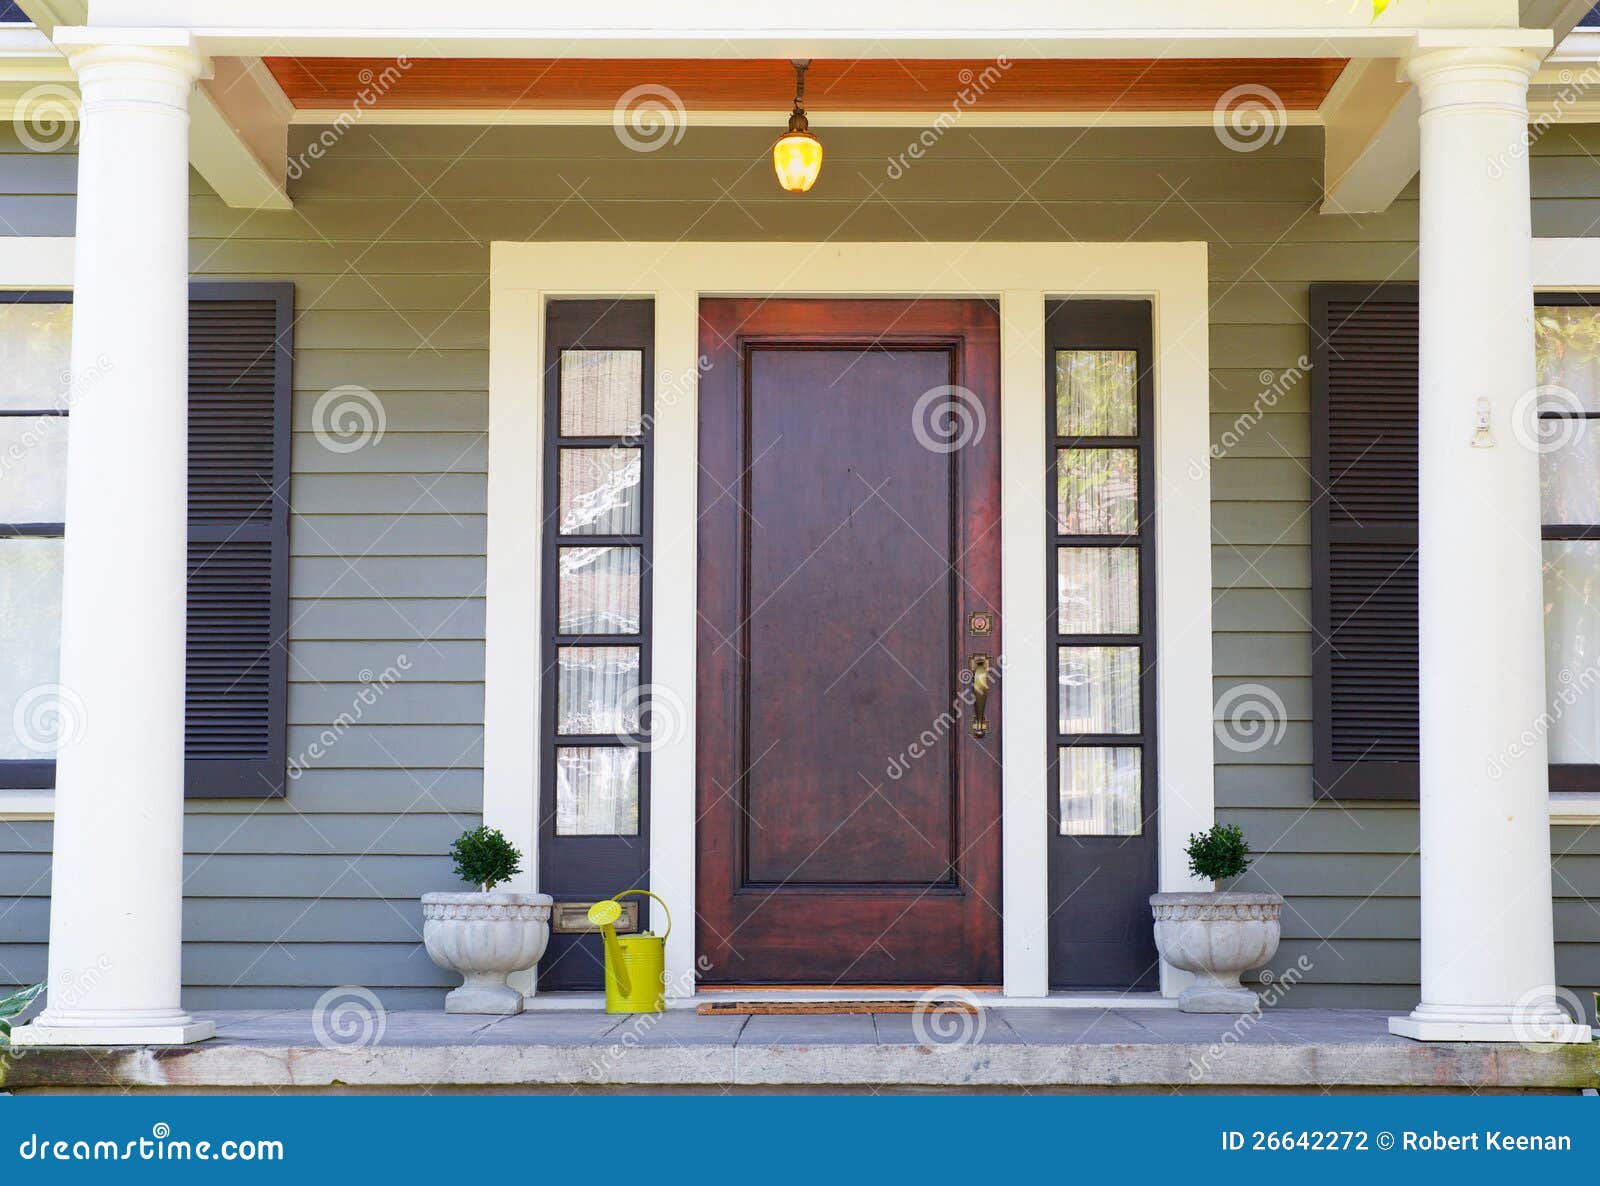 brown stained front door